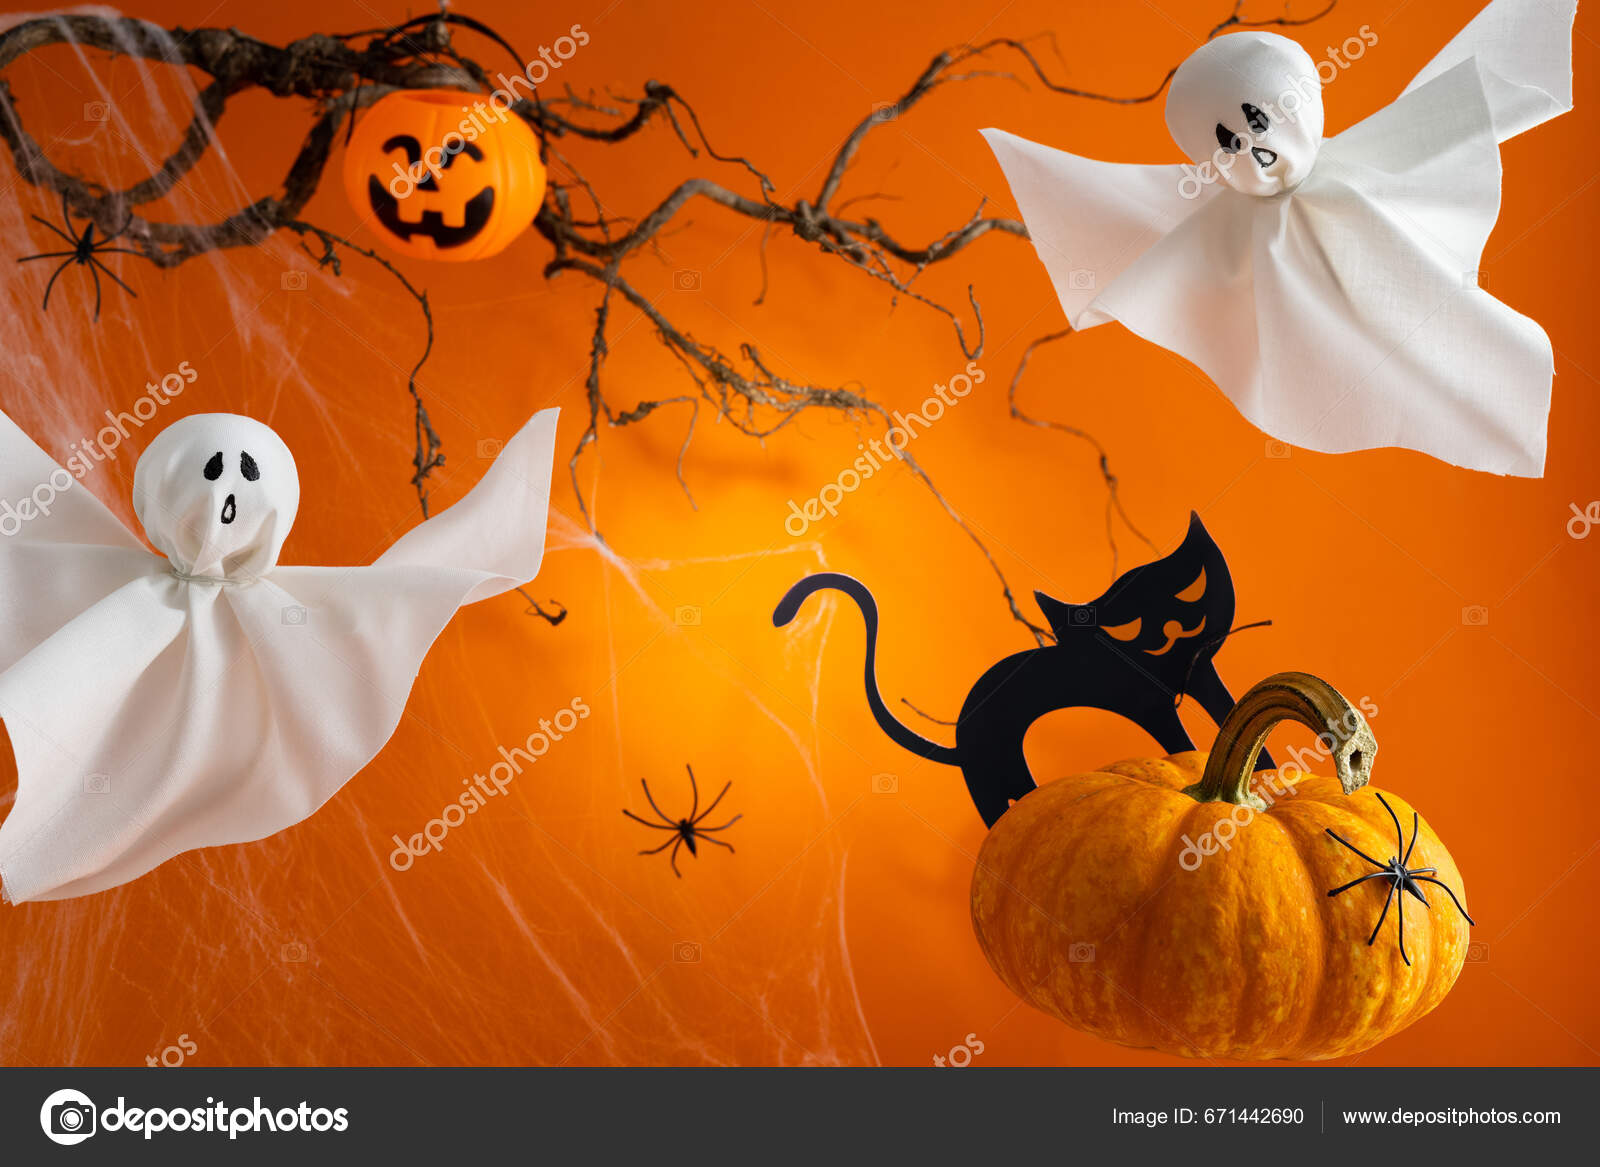 Fundos de bruxas assustadoras do festival de halloween de outubro